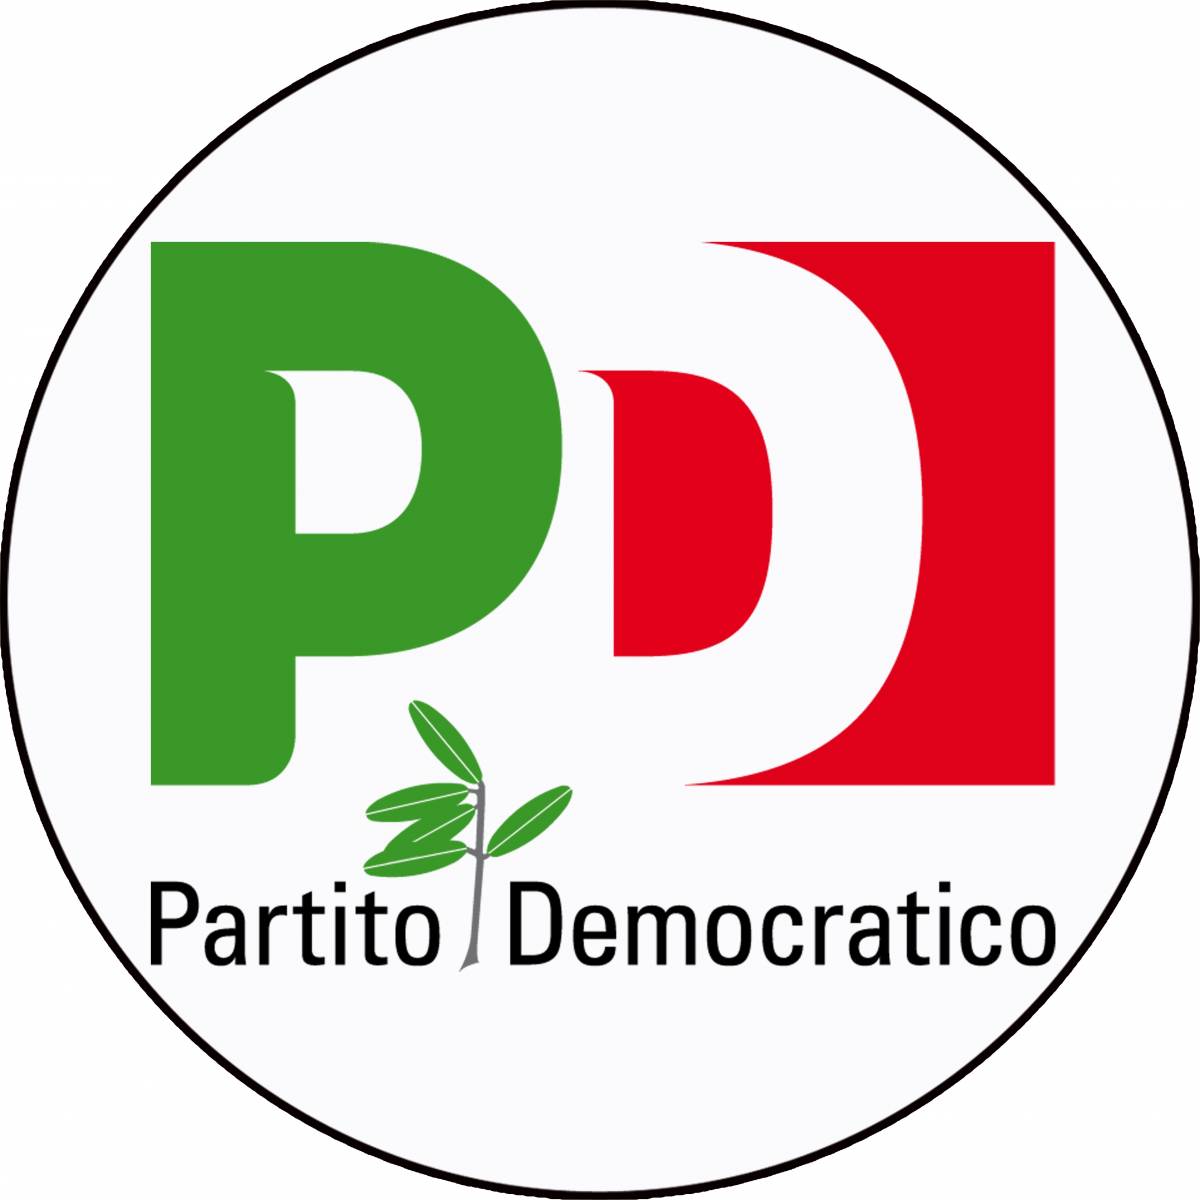 "Renzi tolga il ramoscello d'ulivo dal simbolo del Pd"